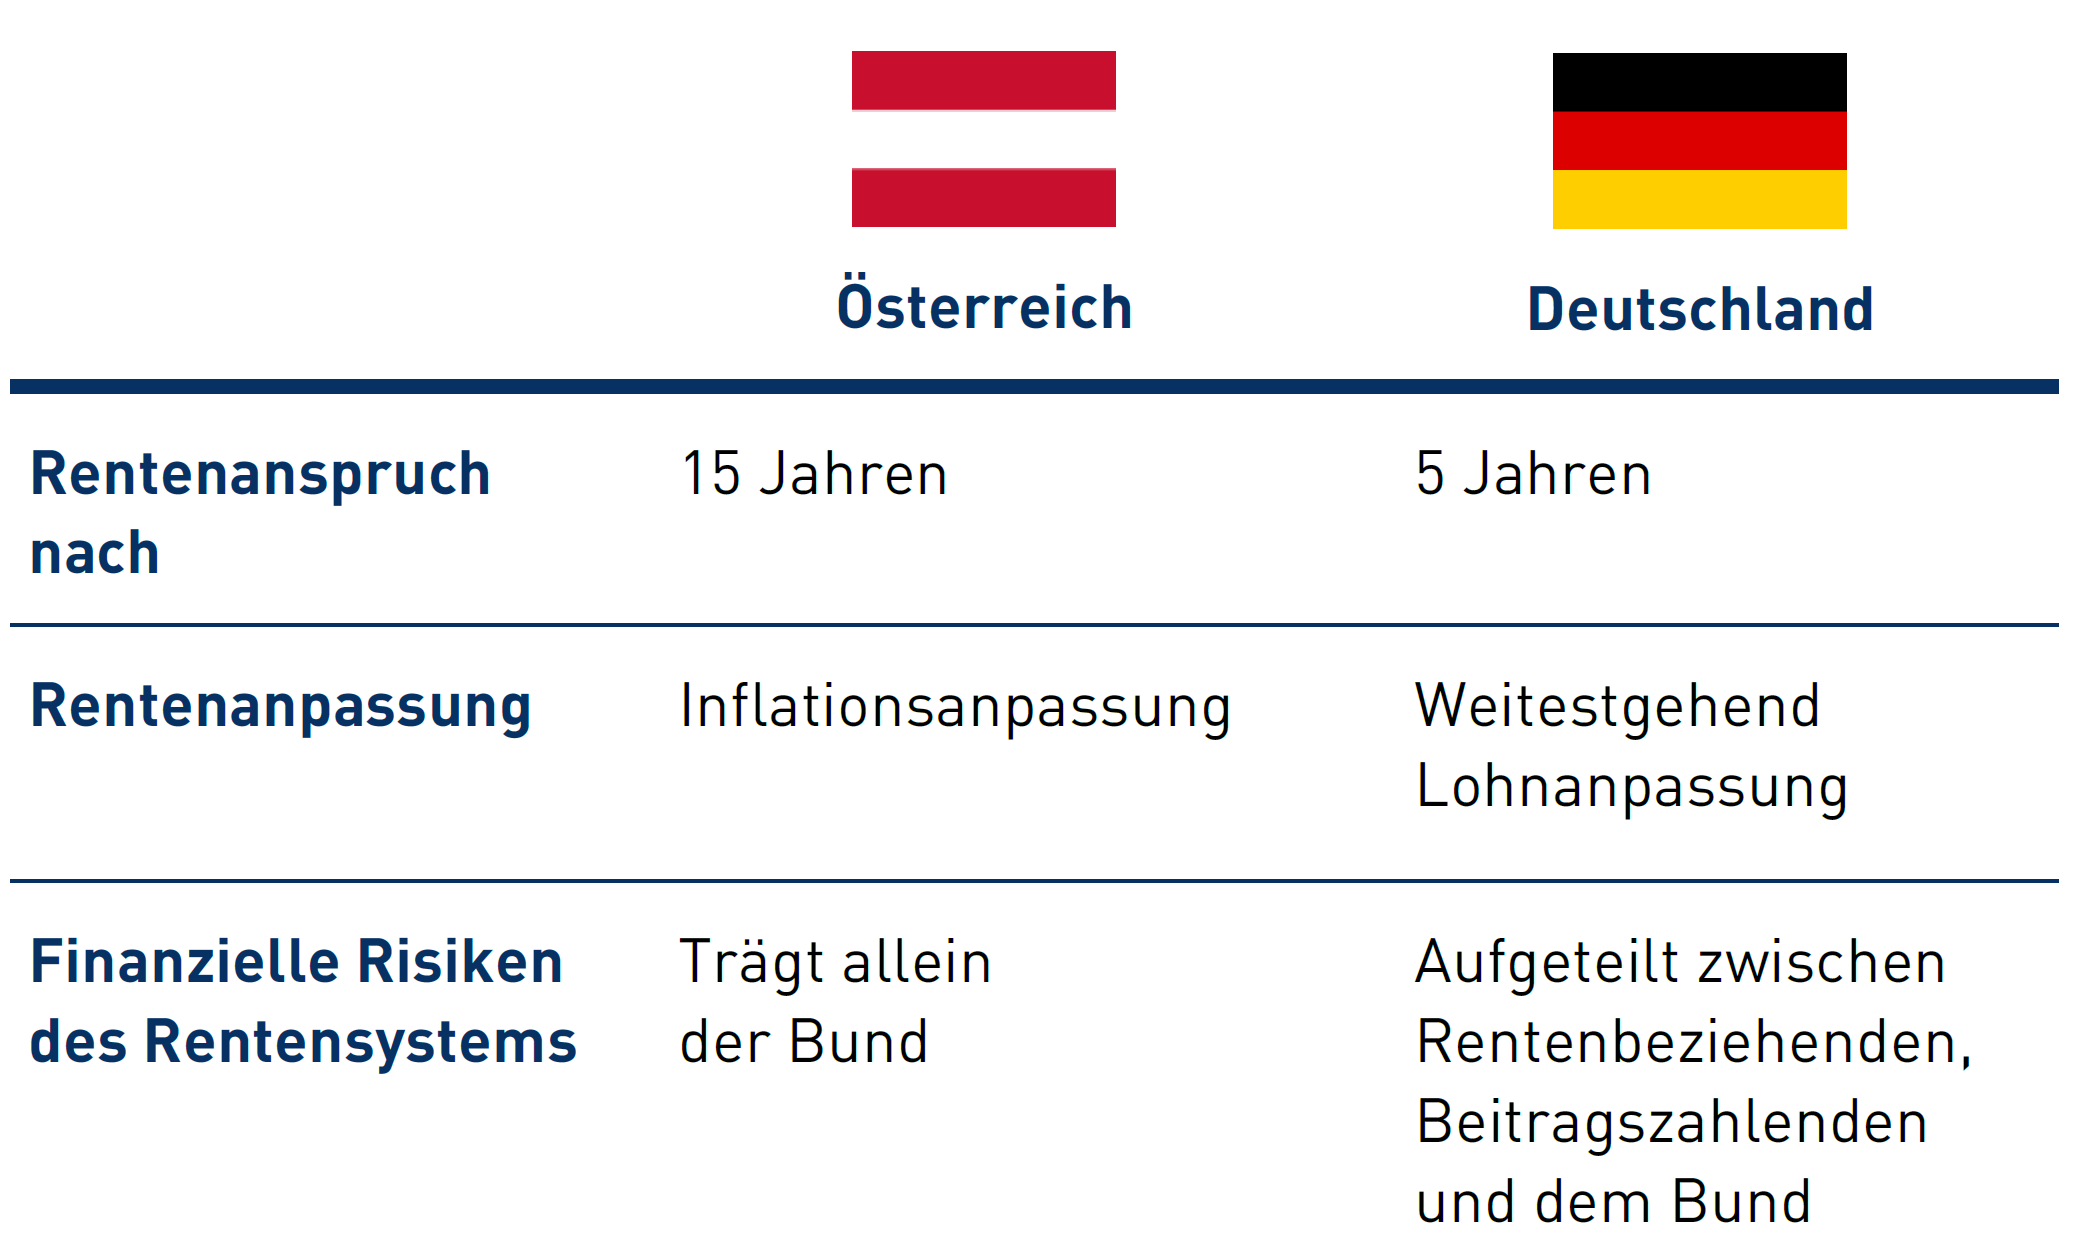 Die Tabelle zeigt die wesentlichen Unterschiede zwischen den gesetzlichen Rentenversicherungssystemen in Österreich und Deutschland. Details in der Lang-Variante.